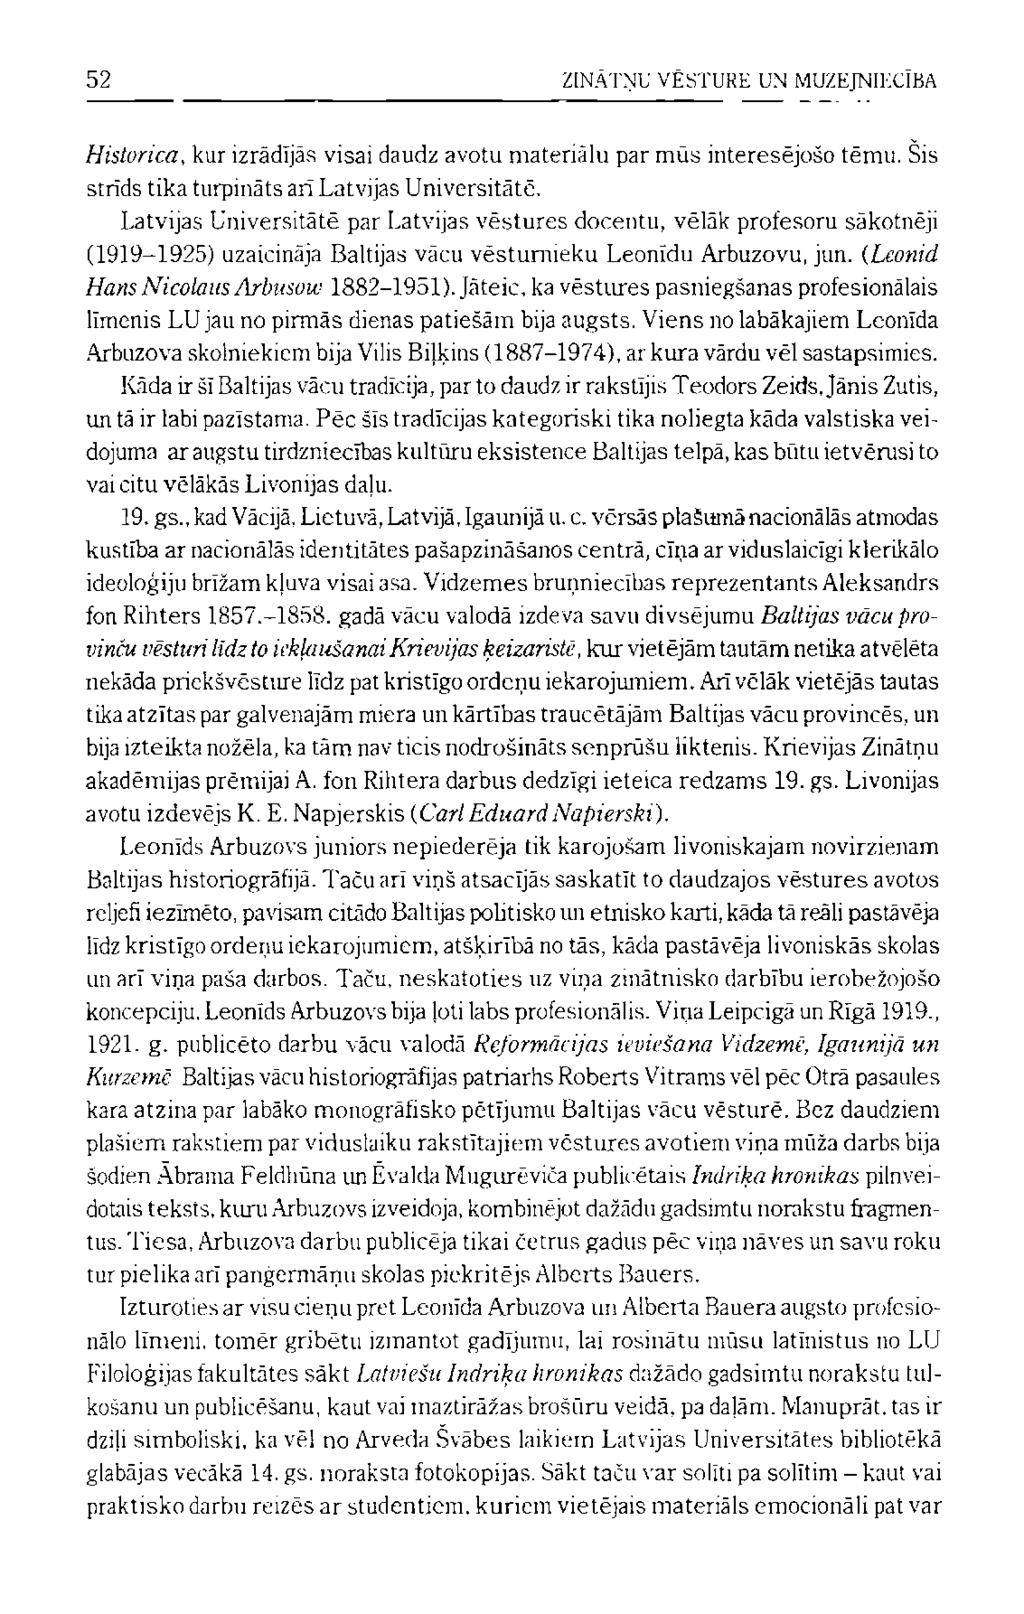 Latvija Amerika, March 12, , page 5 | SFU Digitized Newspapers